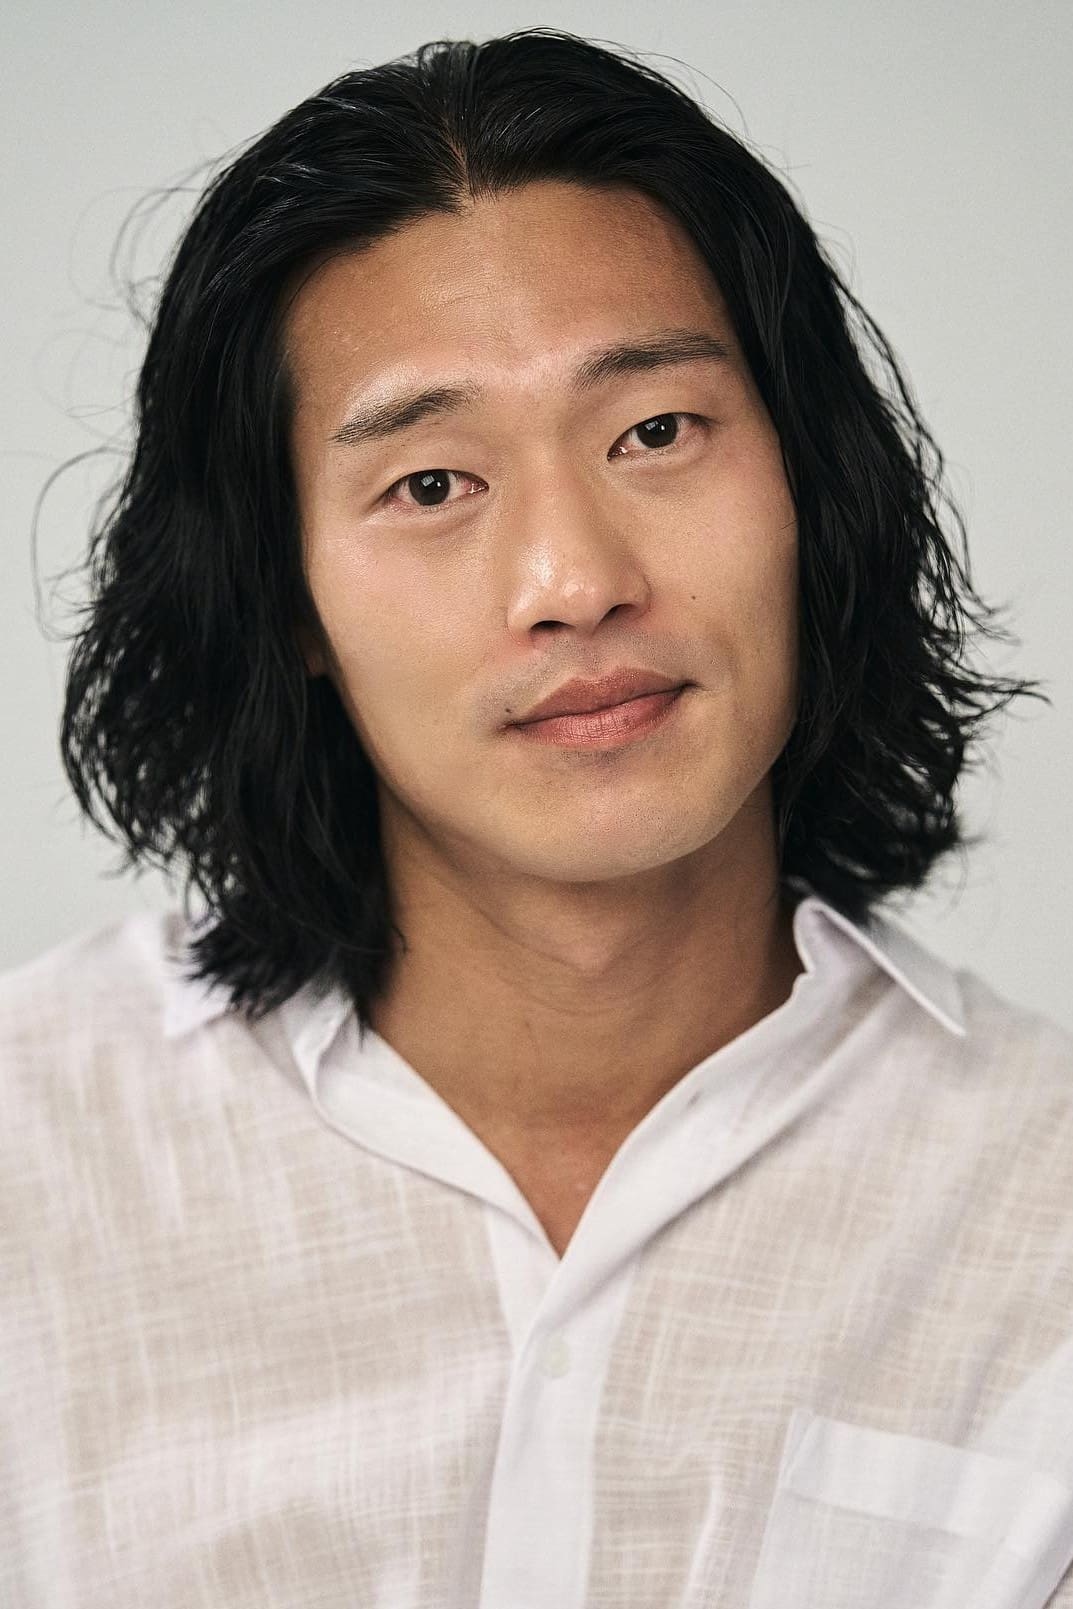 Choi Won-seok